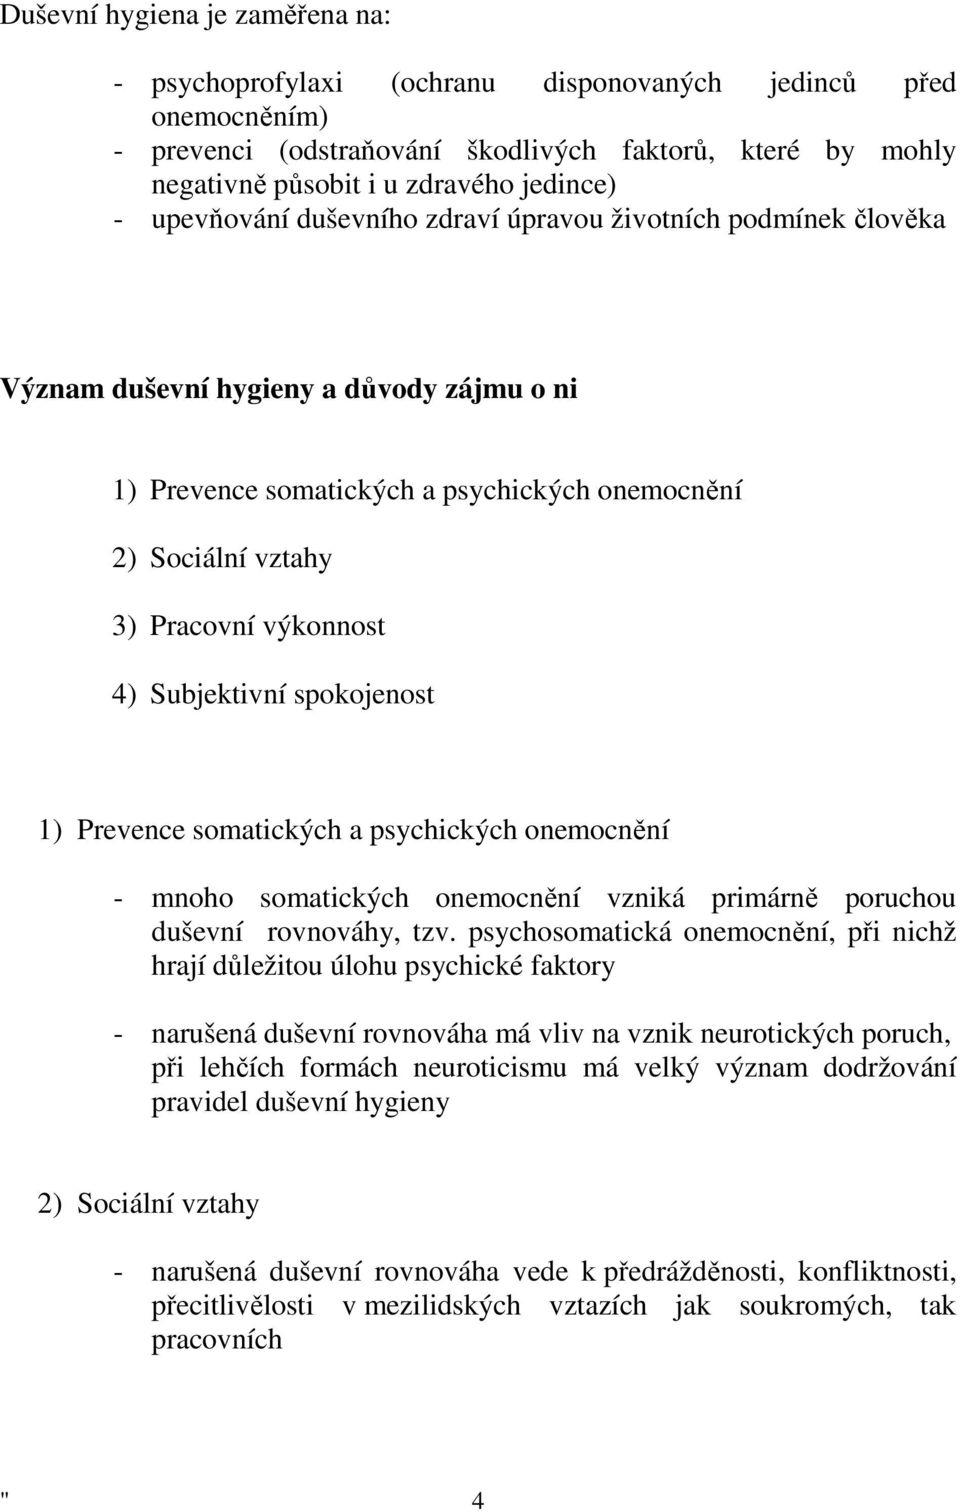 4) Subjektivní spokojenost 1) Prevence somatických a psychických onemocnění - mnoho somatických onemocnění vzniká primárně poruchou duševní rovnováhy, tzv.